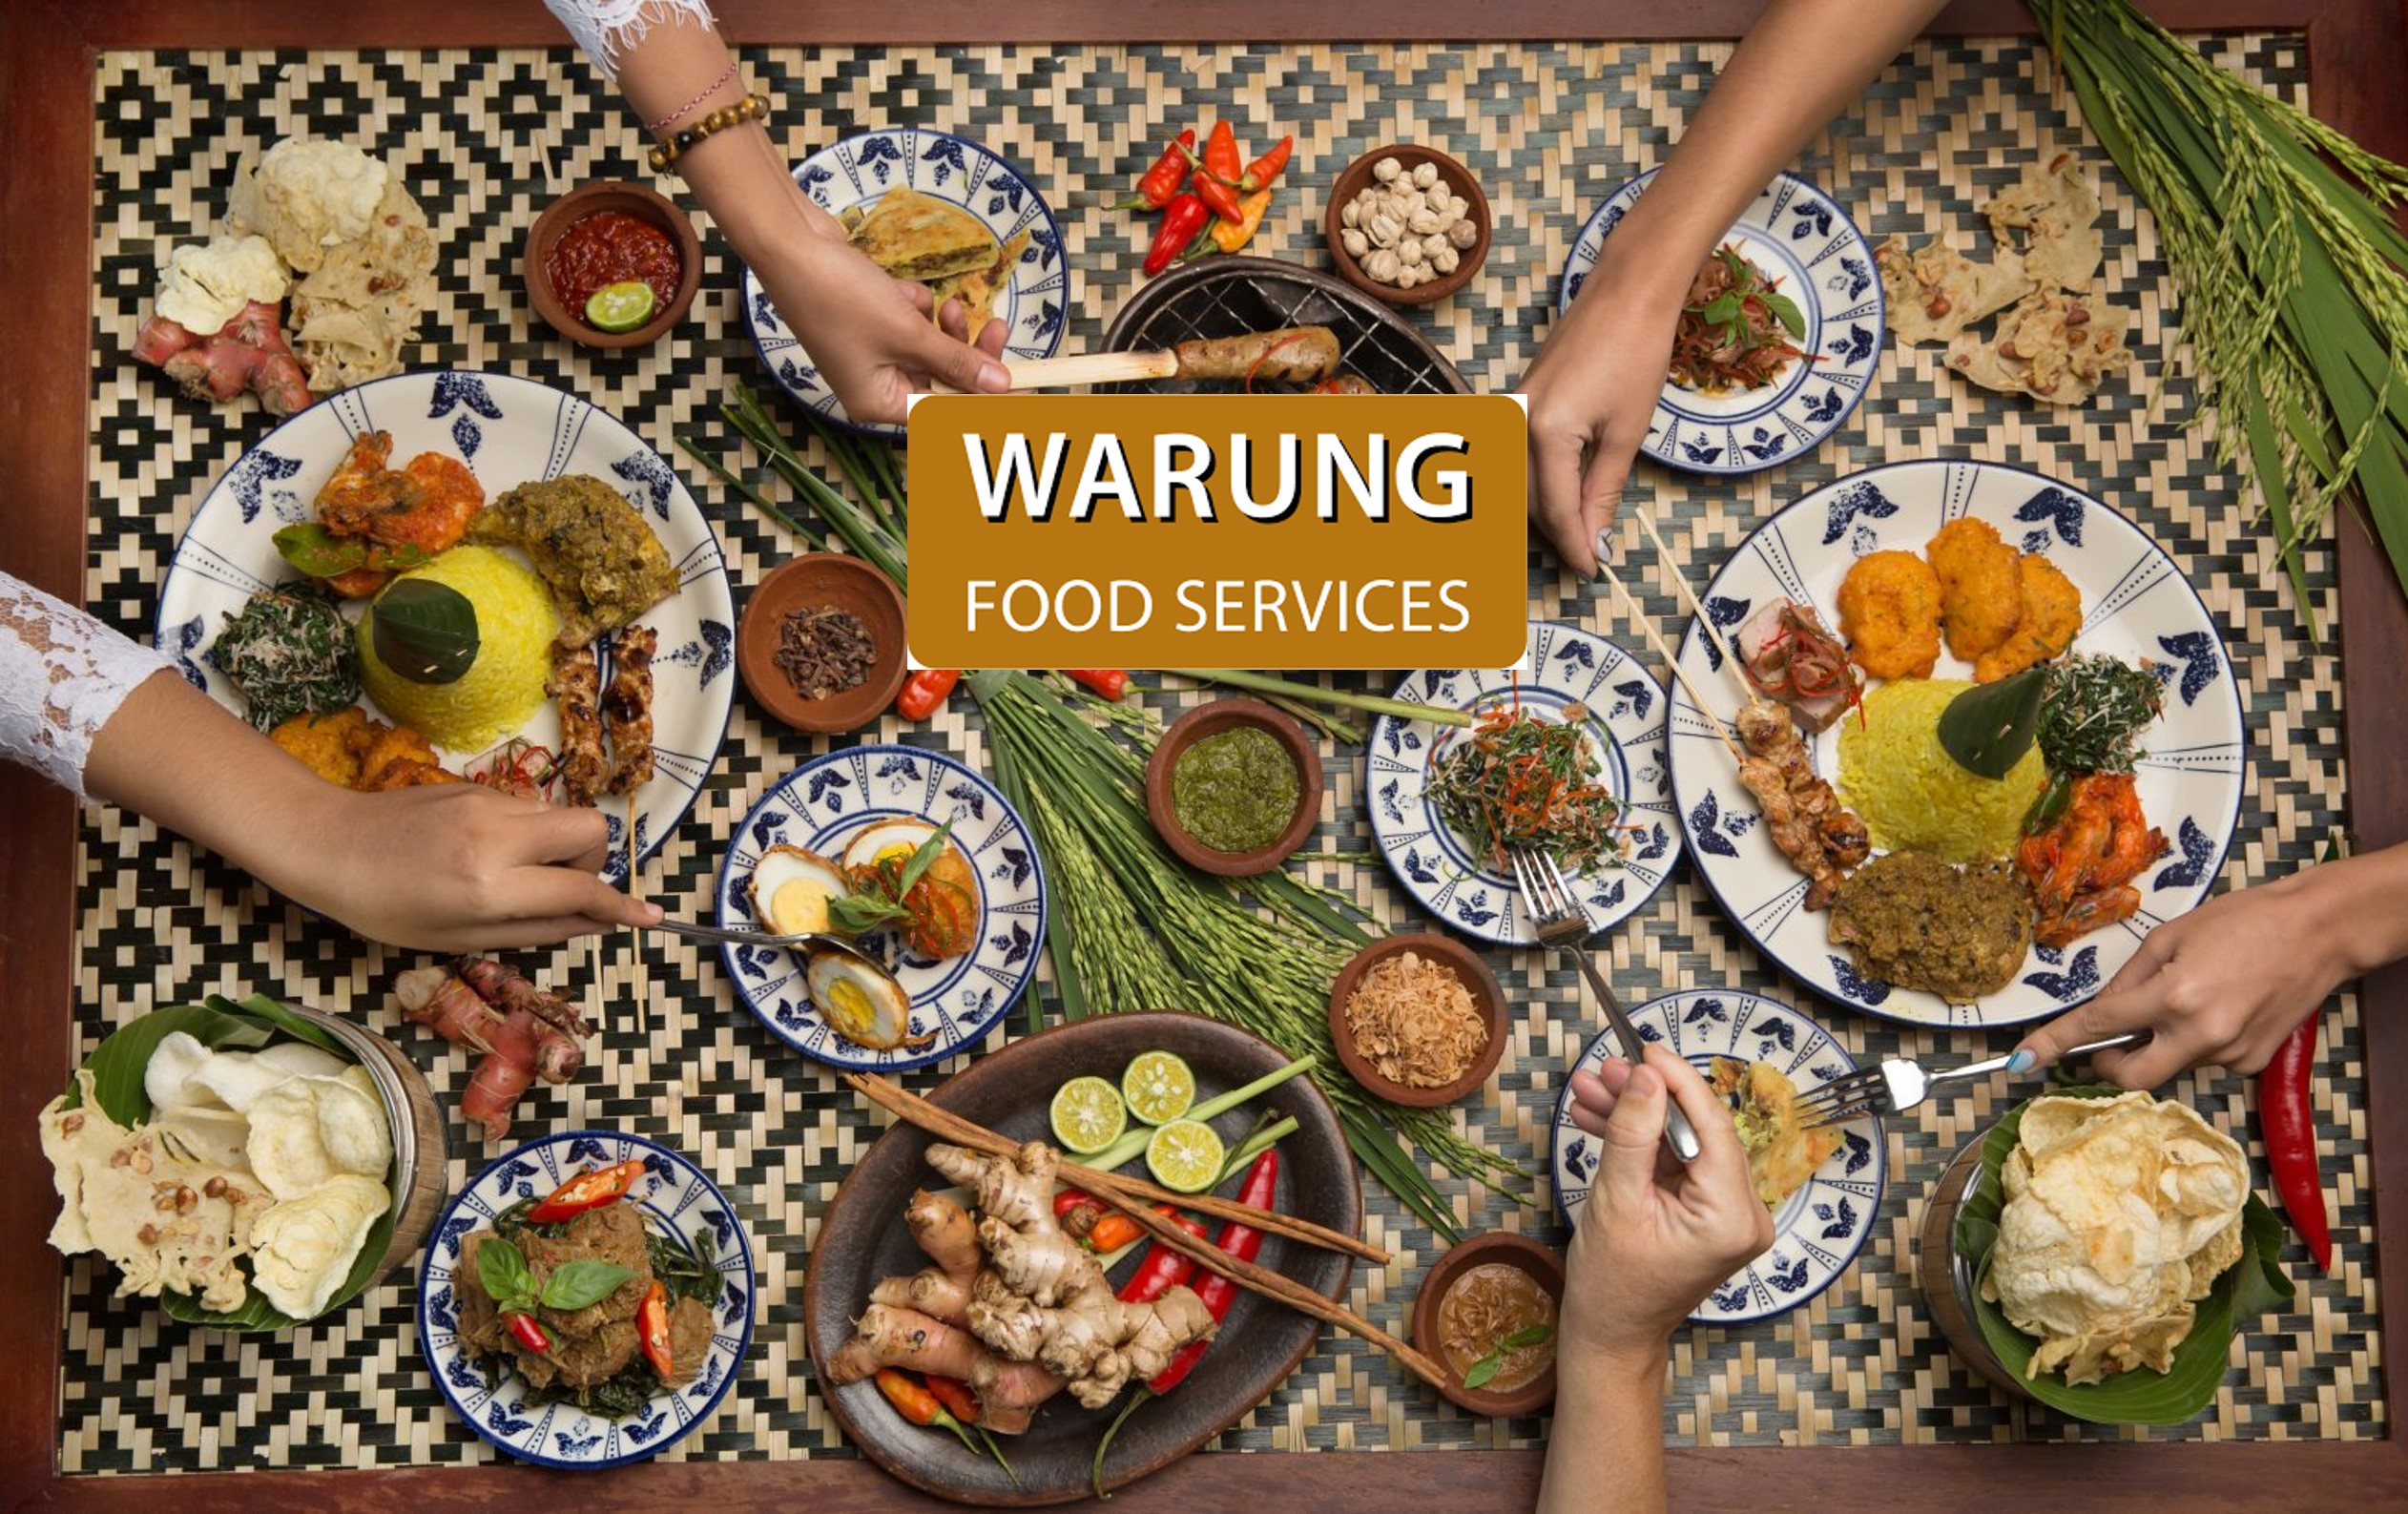 Warung Food Services: “Samen zorgen we voor een constante kwaliteit”